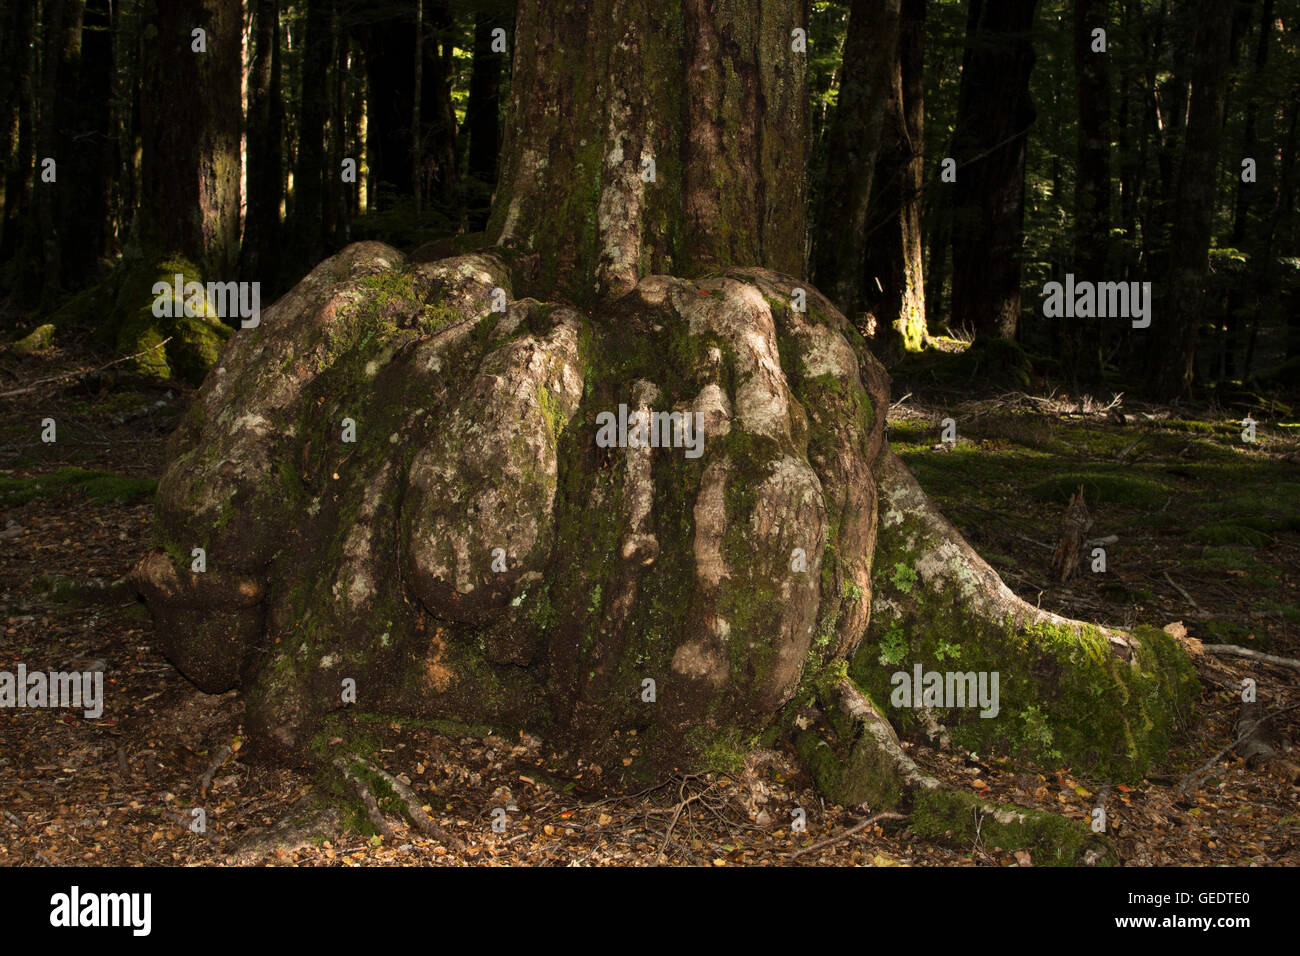 Nach einigen Infektion entwickelt einige Bäume im alten südlichen Buchenwälder in Neuseeland angebaut abnorme Wachstum Krebs genannt. Stockfoto